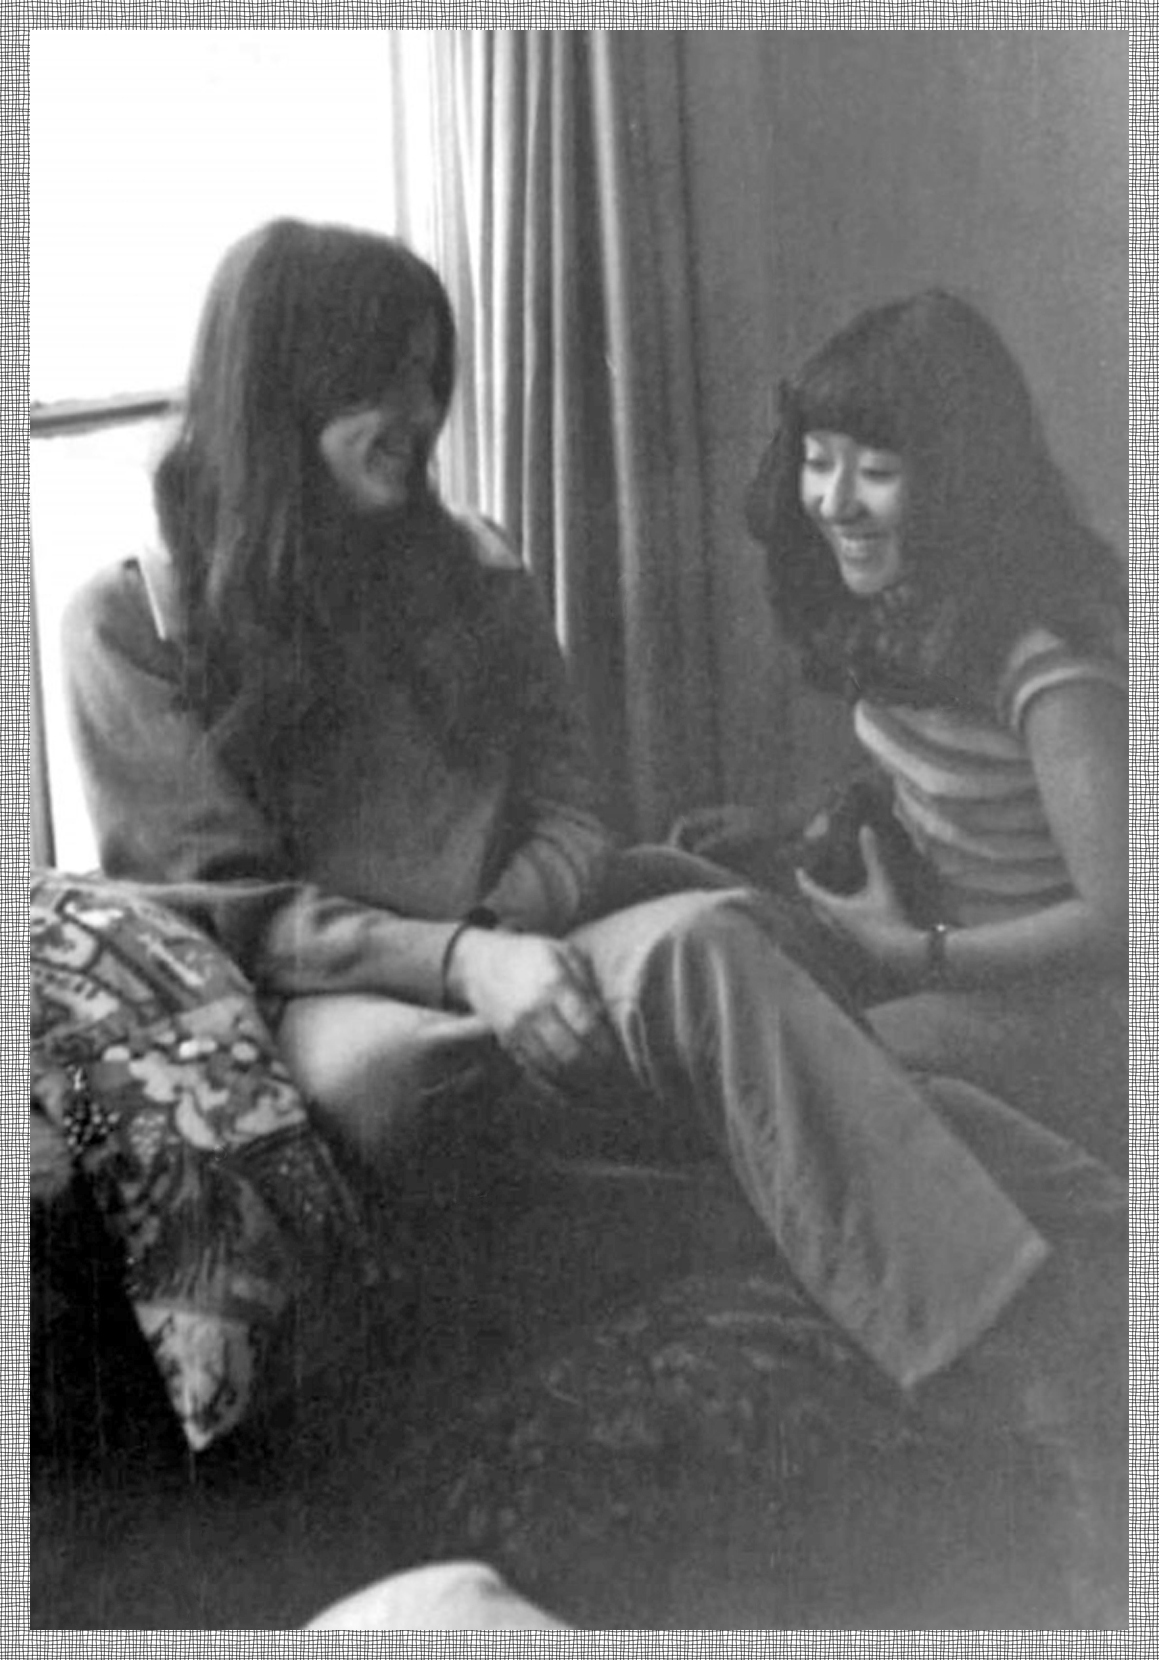 With my 1971 roommate, Miya Kamijo